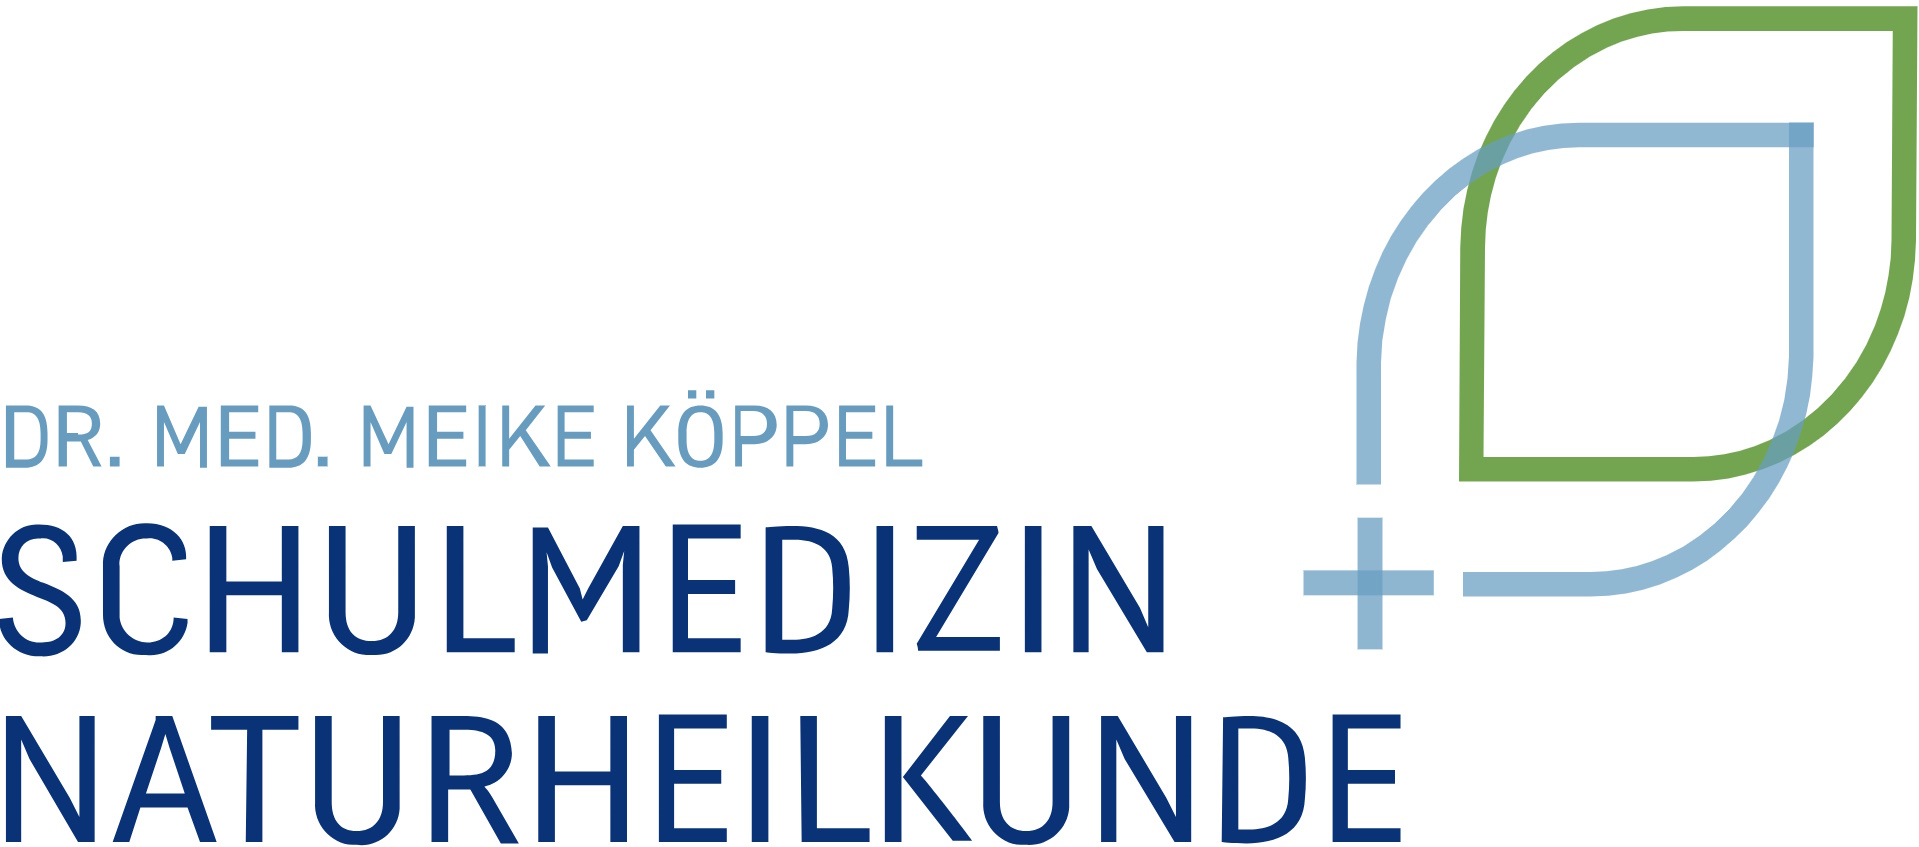 Dr. med. Meike Köppel Logo